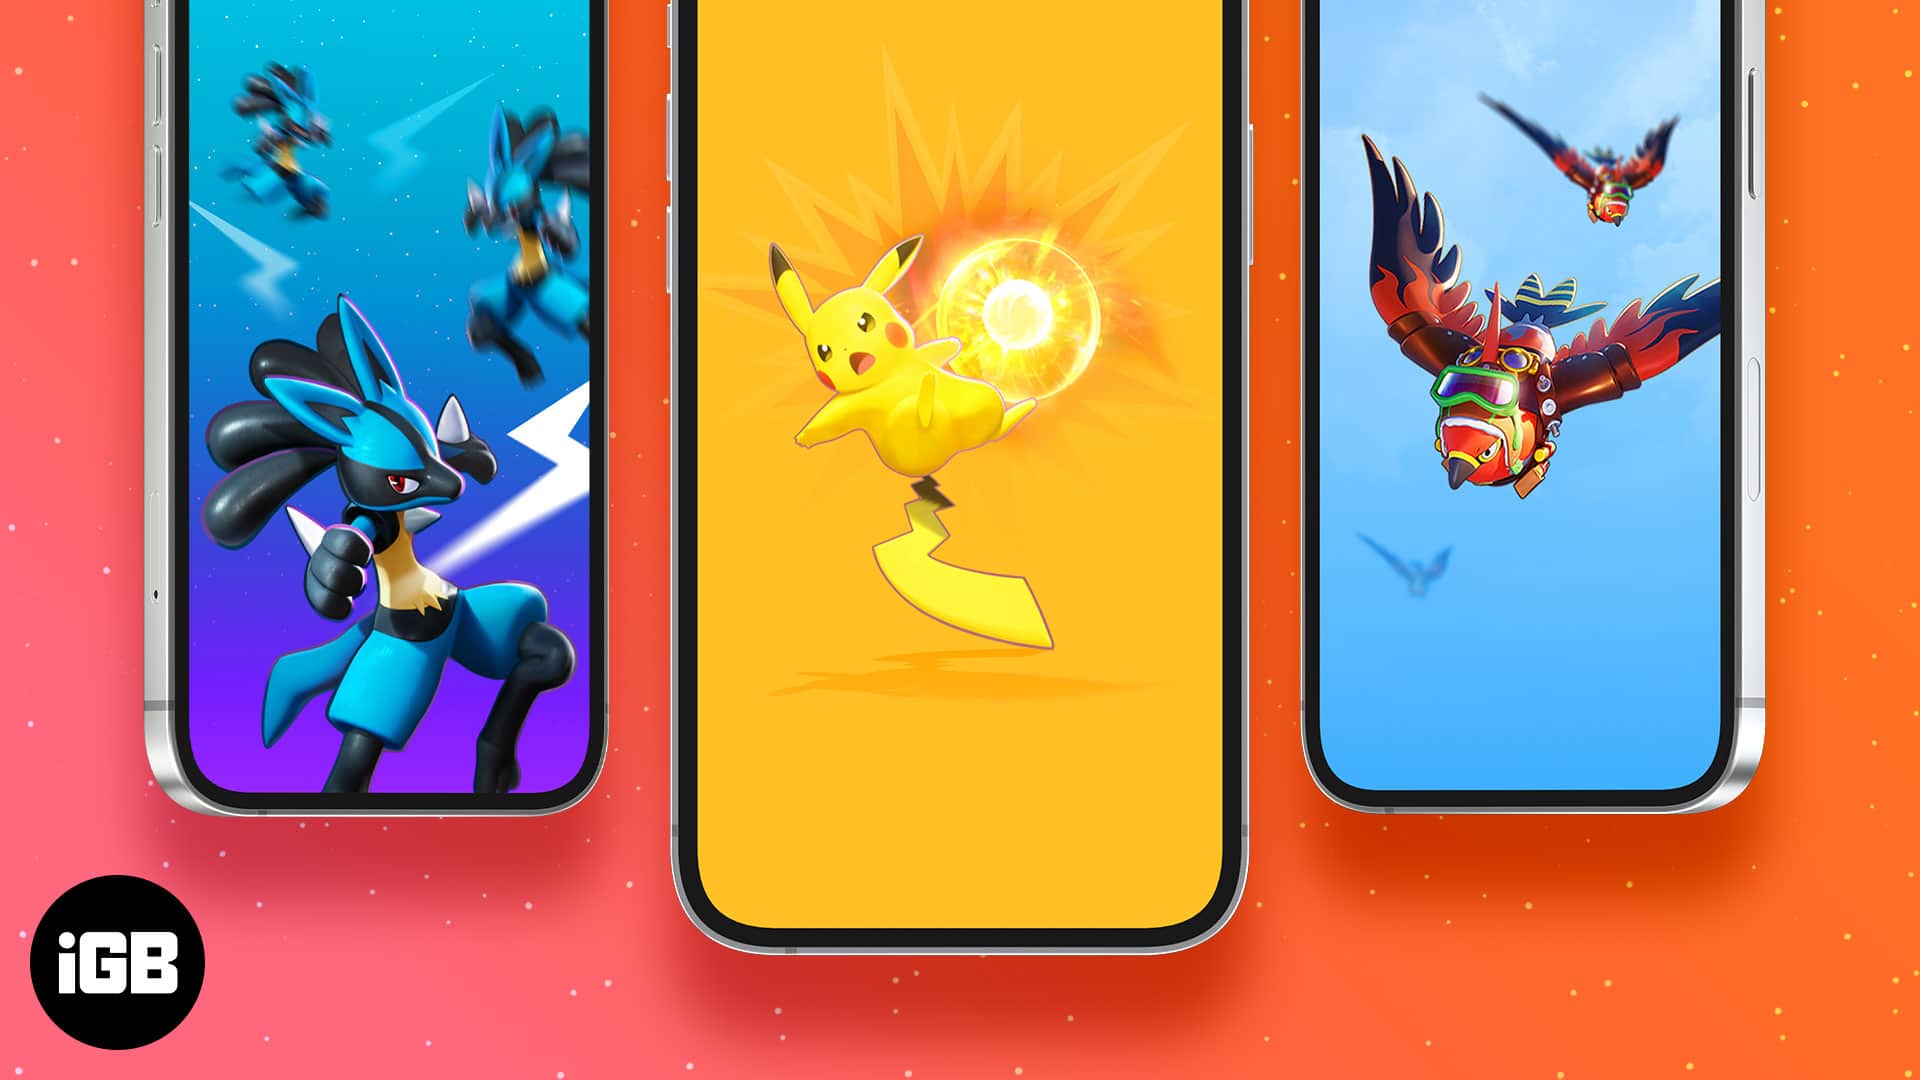 Hãy nâng tầm khả năng esteti của chiếc iPhone của bạn với bộ sưu tập Pokemon iPhone Wallpapers. Với nhiều thiết kế để lựa chọn, bạn có thể thể hiện được sở thích của mình một cách thật độc đáo và cá tính.